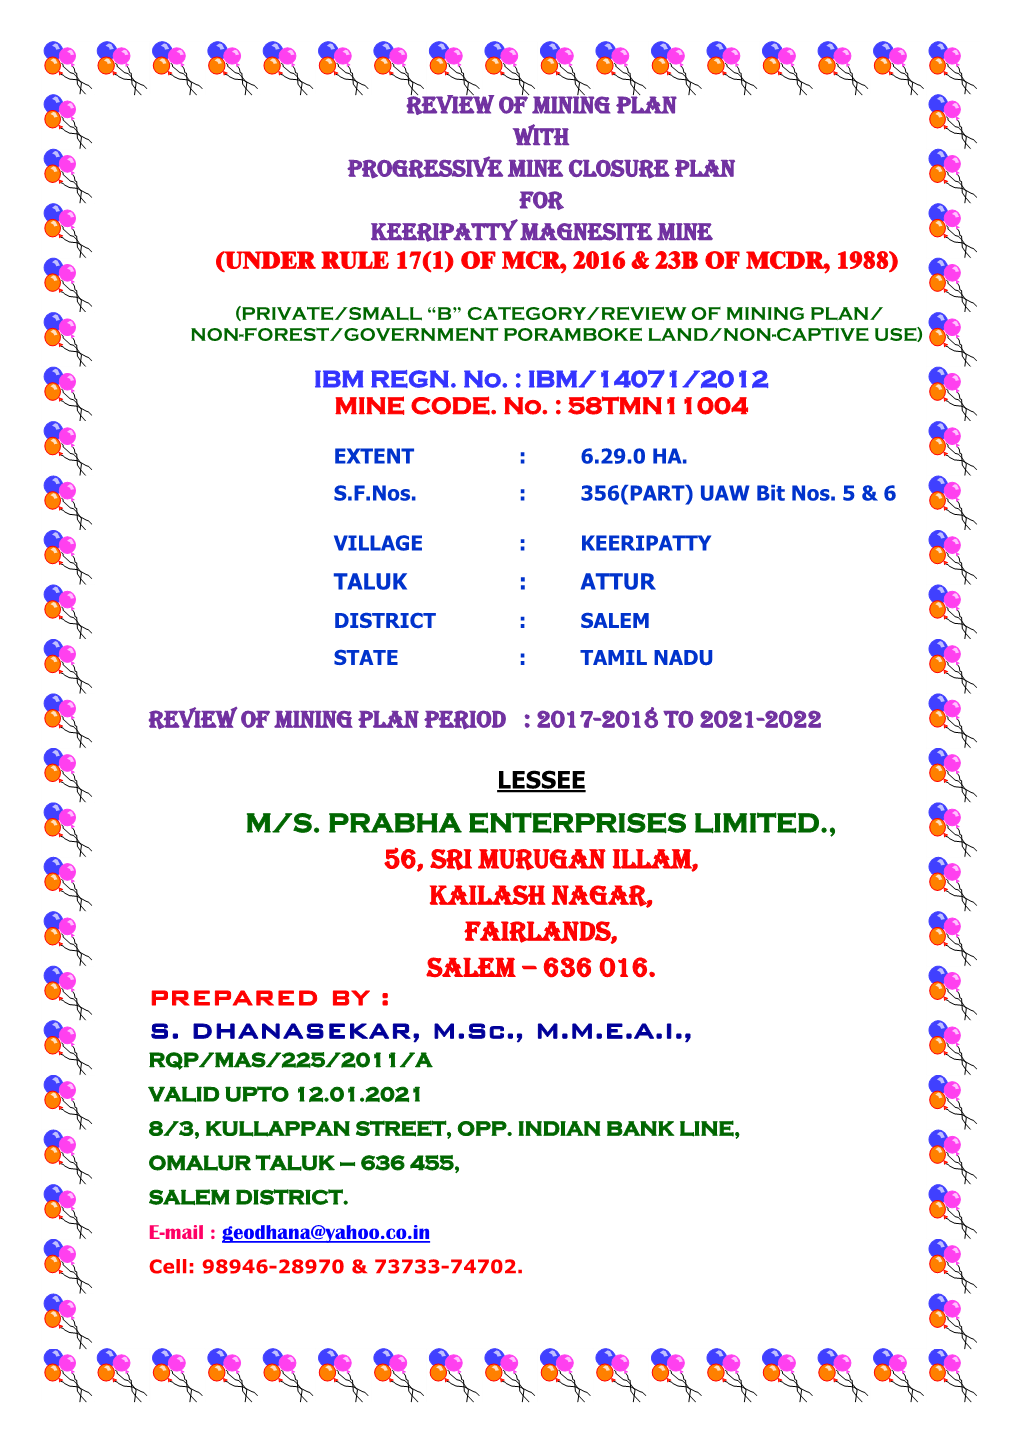 M/S. PRABHA ENTERPRISES LIMITED., 56, Sri Murugan Illam, Kailash Nagar, Fairlands, Salem – 636 016